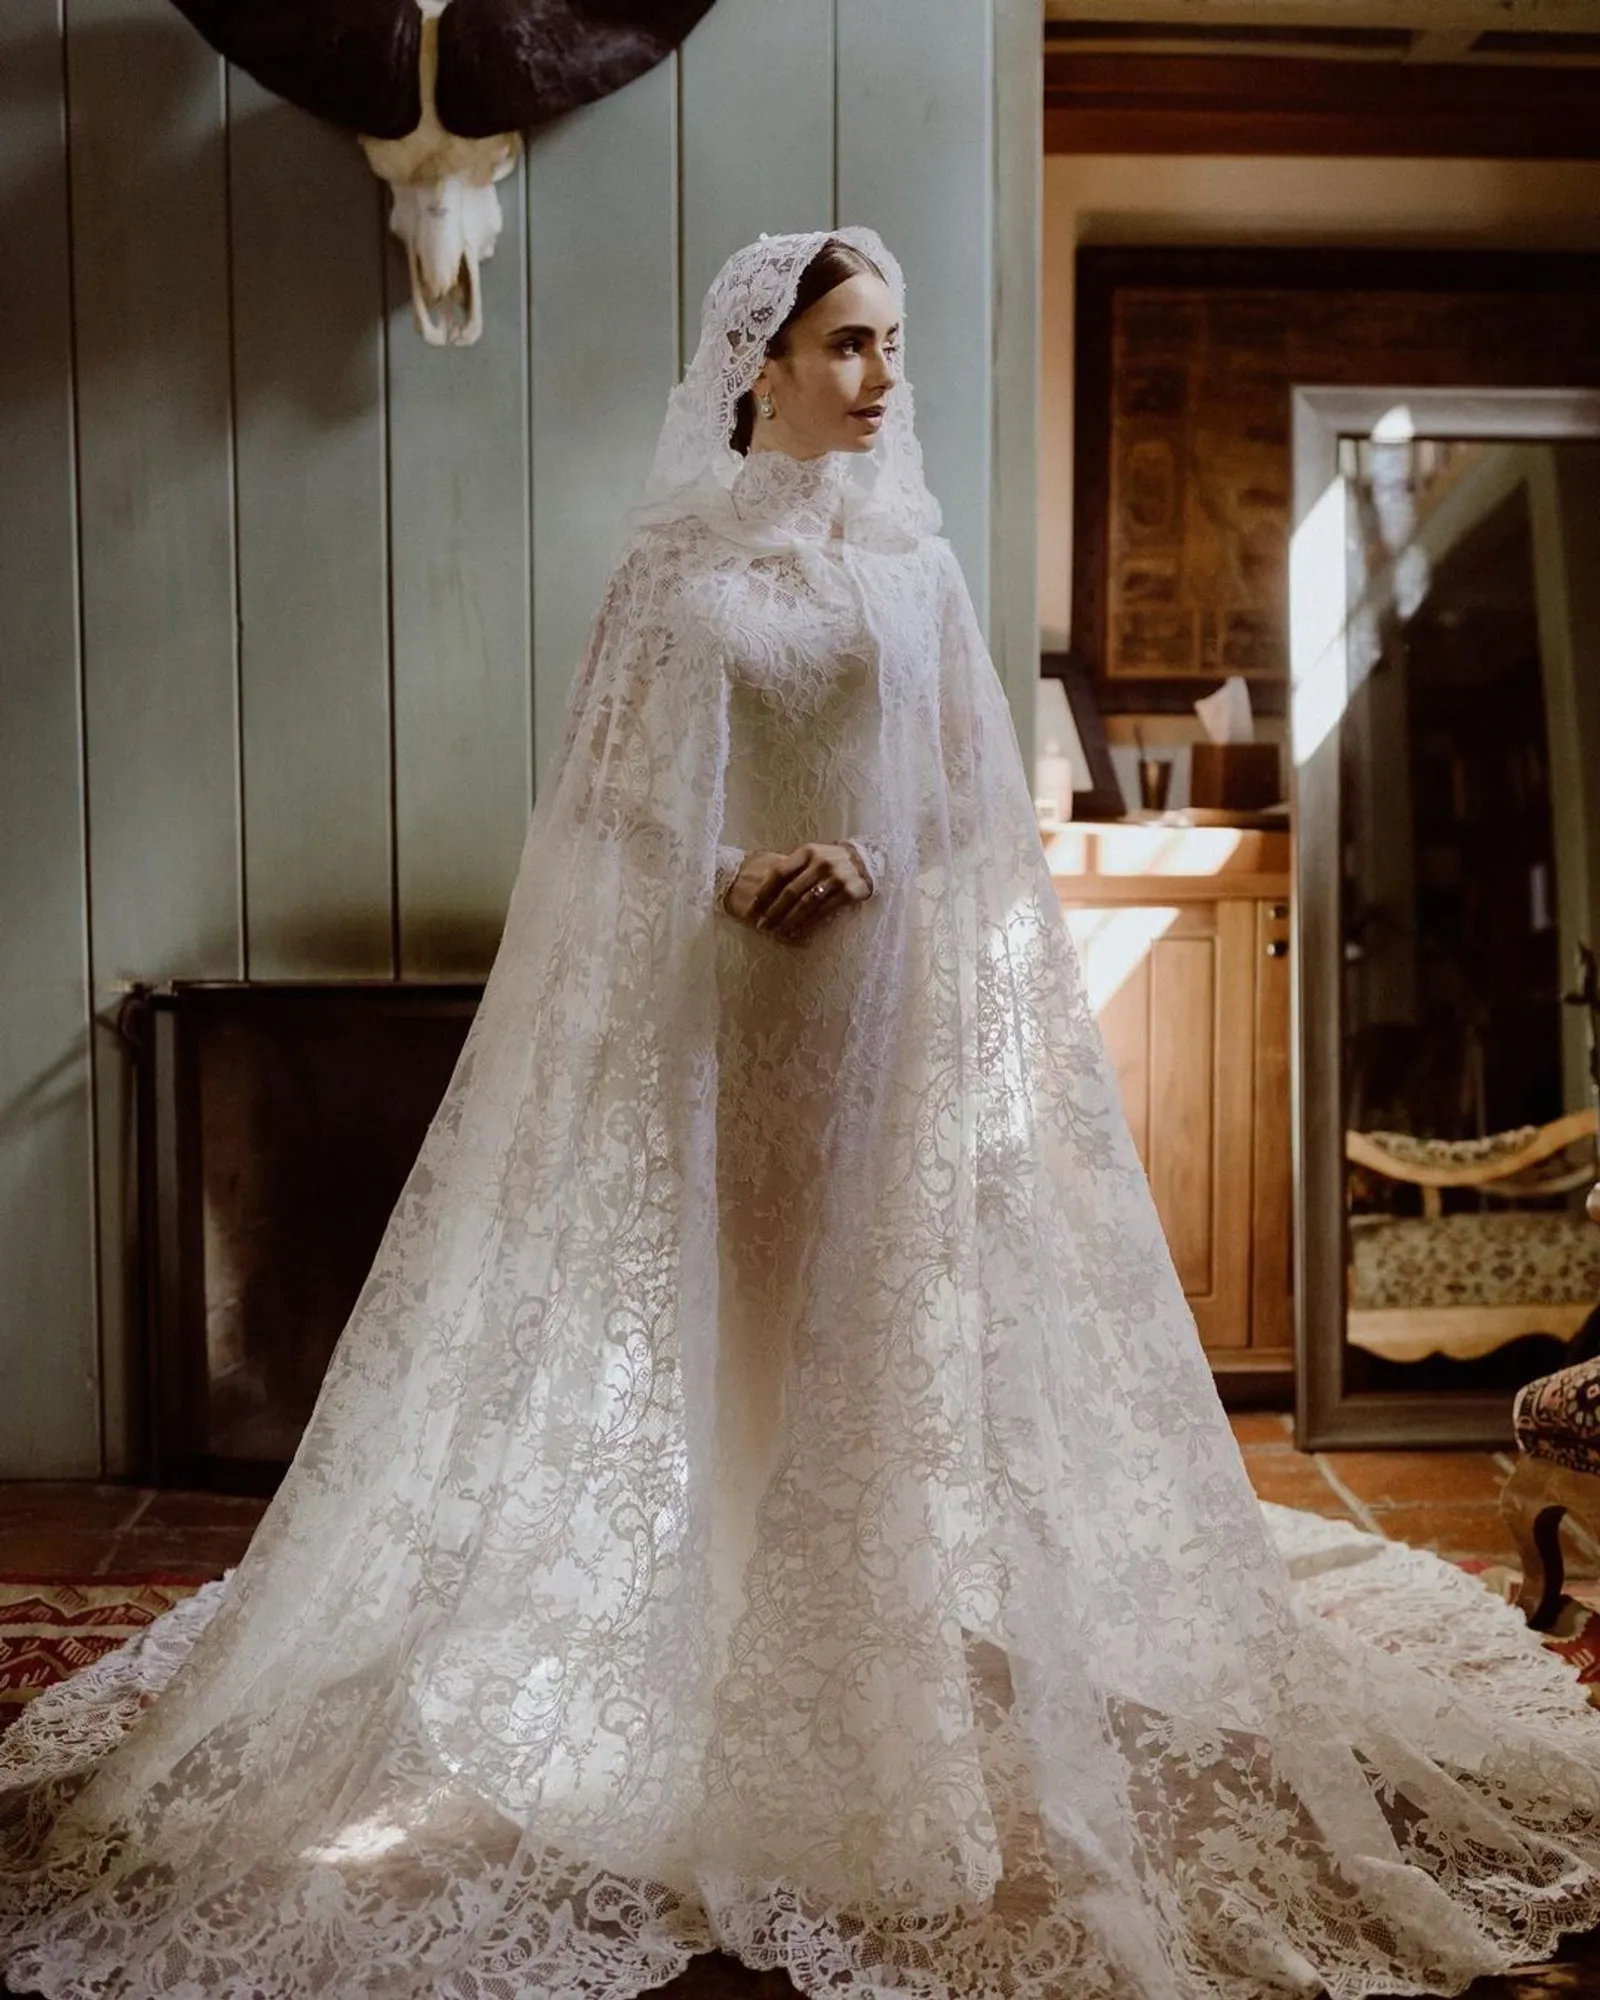 Gaya Artis yang Pakai Gaun Putih saat Menikah, Elegan hingga Seksi